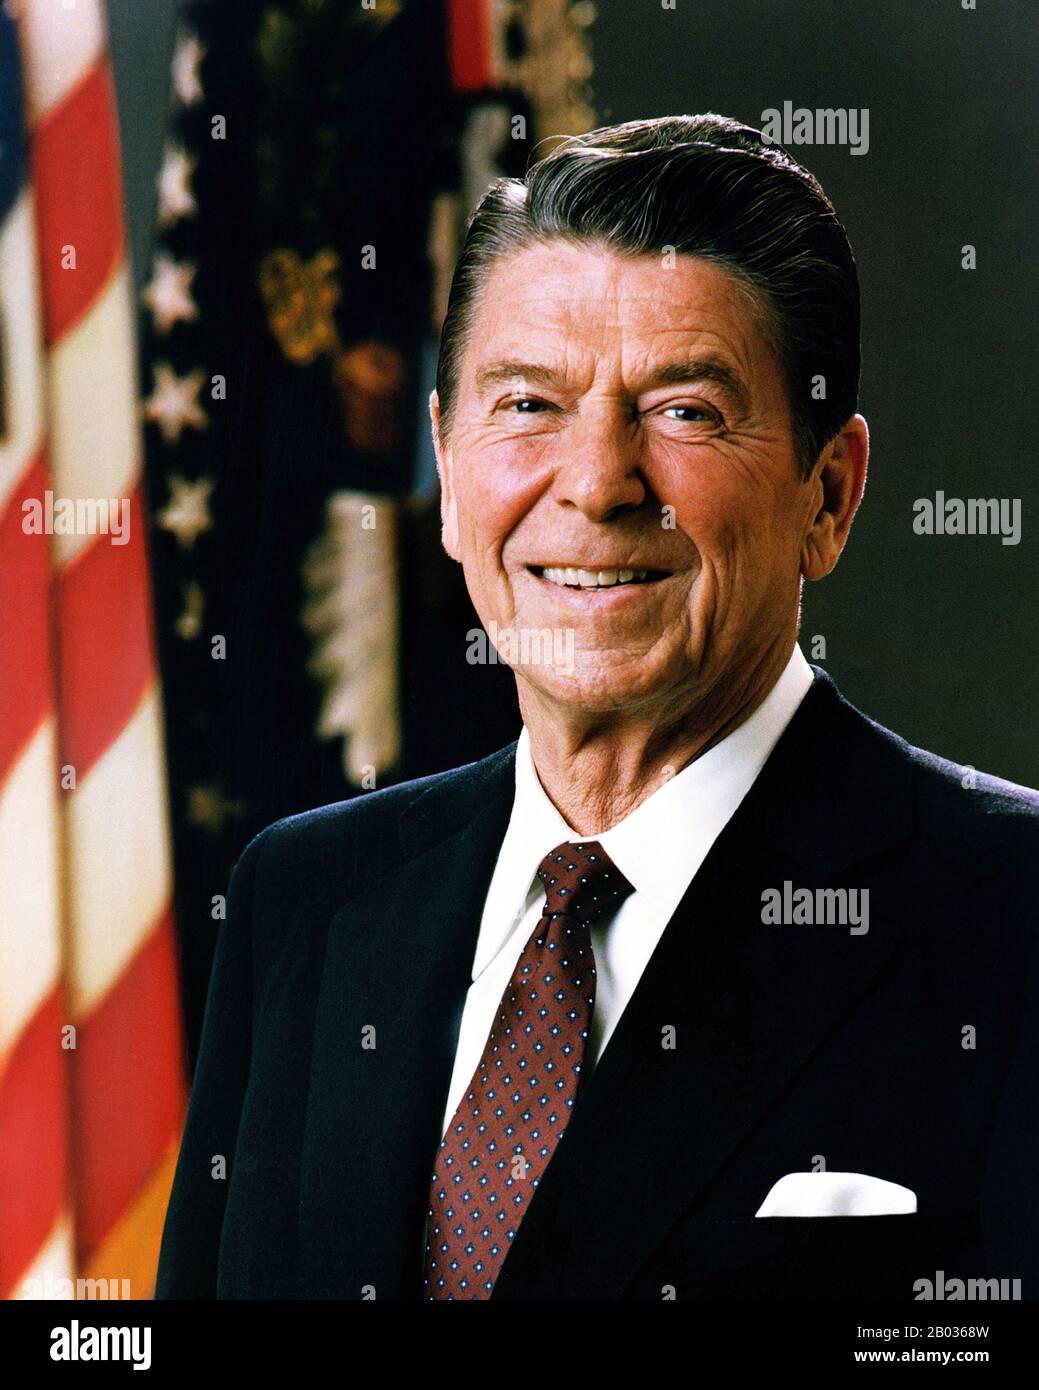 Ronald Wilson Reagan (6. Februar 1911 - 5. Juni 2004, Republikaner) war ein US-amerikanischer Politiker und Schauspieler, der von 1981 bis 1989 der 40. Präsident der Vereinigten Staaten war. Vor seiner Präsidentschaft war er von 1967 bis 1975 der 33. Gouverneur von Kalifornien, nach einer Karriere als Hollywood-Schauspieler und gewerkschaftsführer. Stockfoto